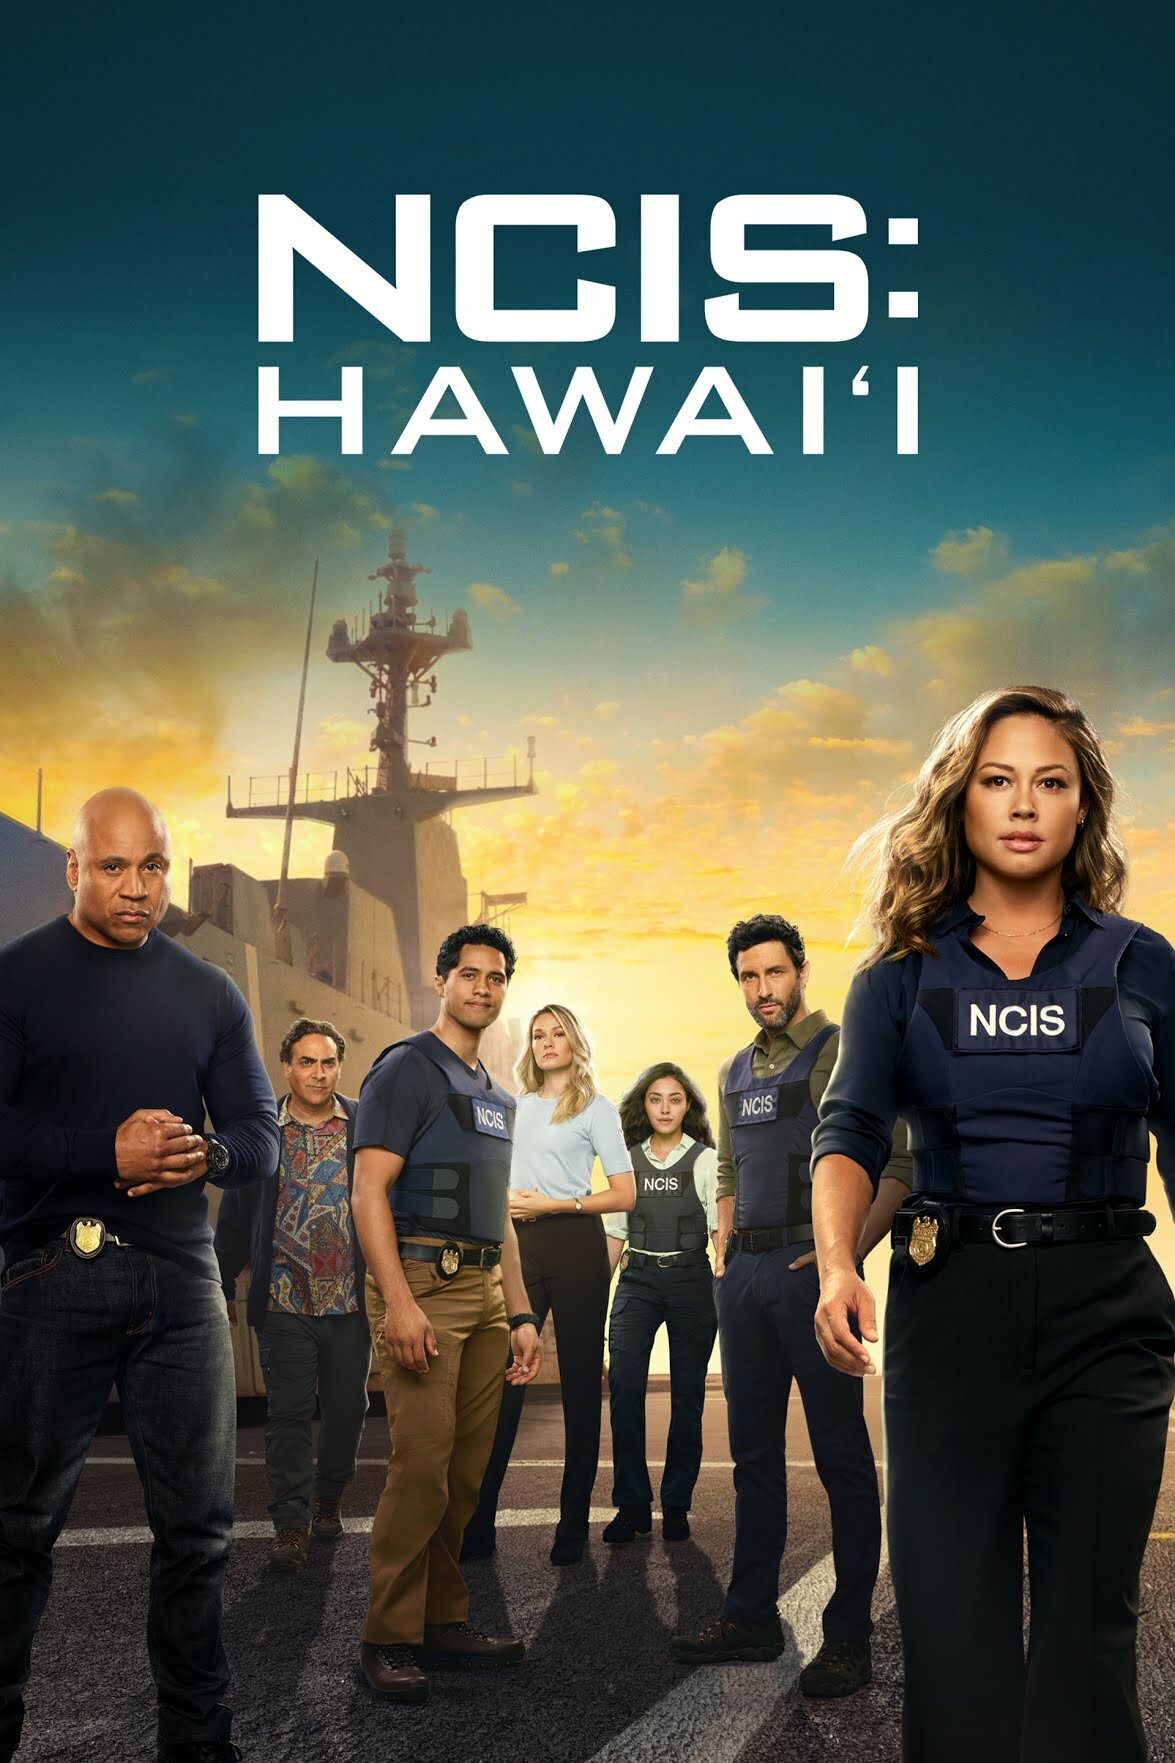 NCIS Hawaii S03E08 720p HDTV x264-SYNCOPY